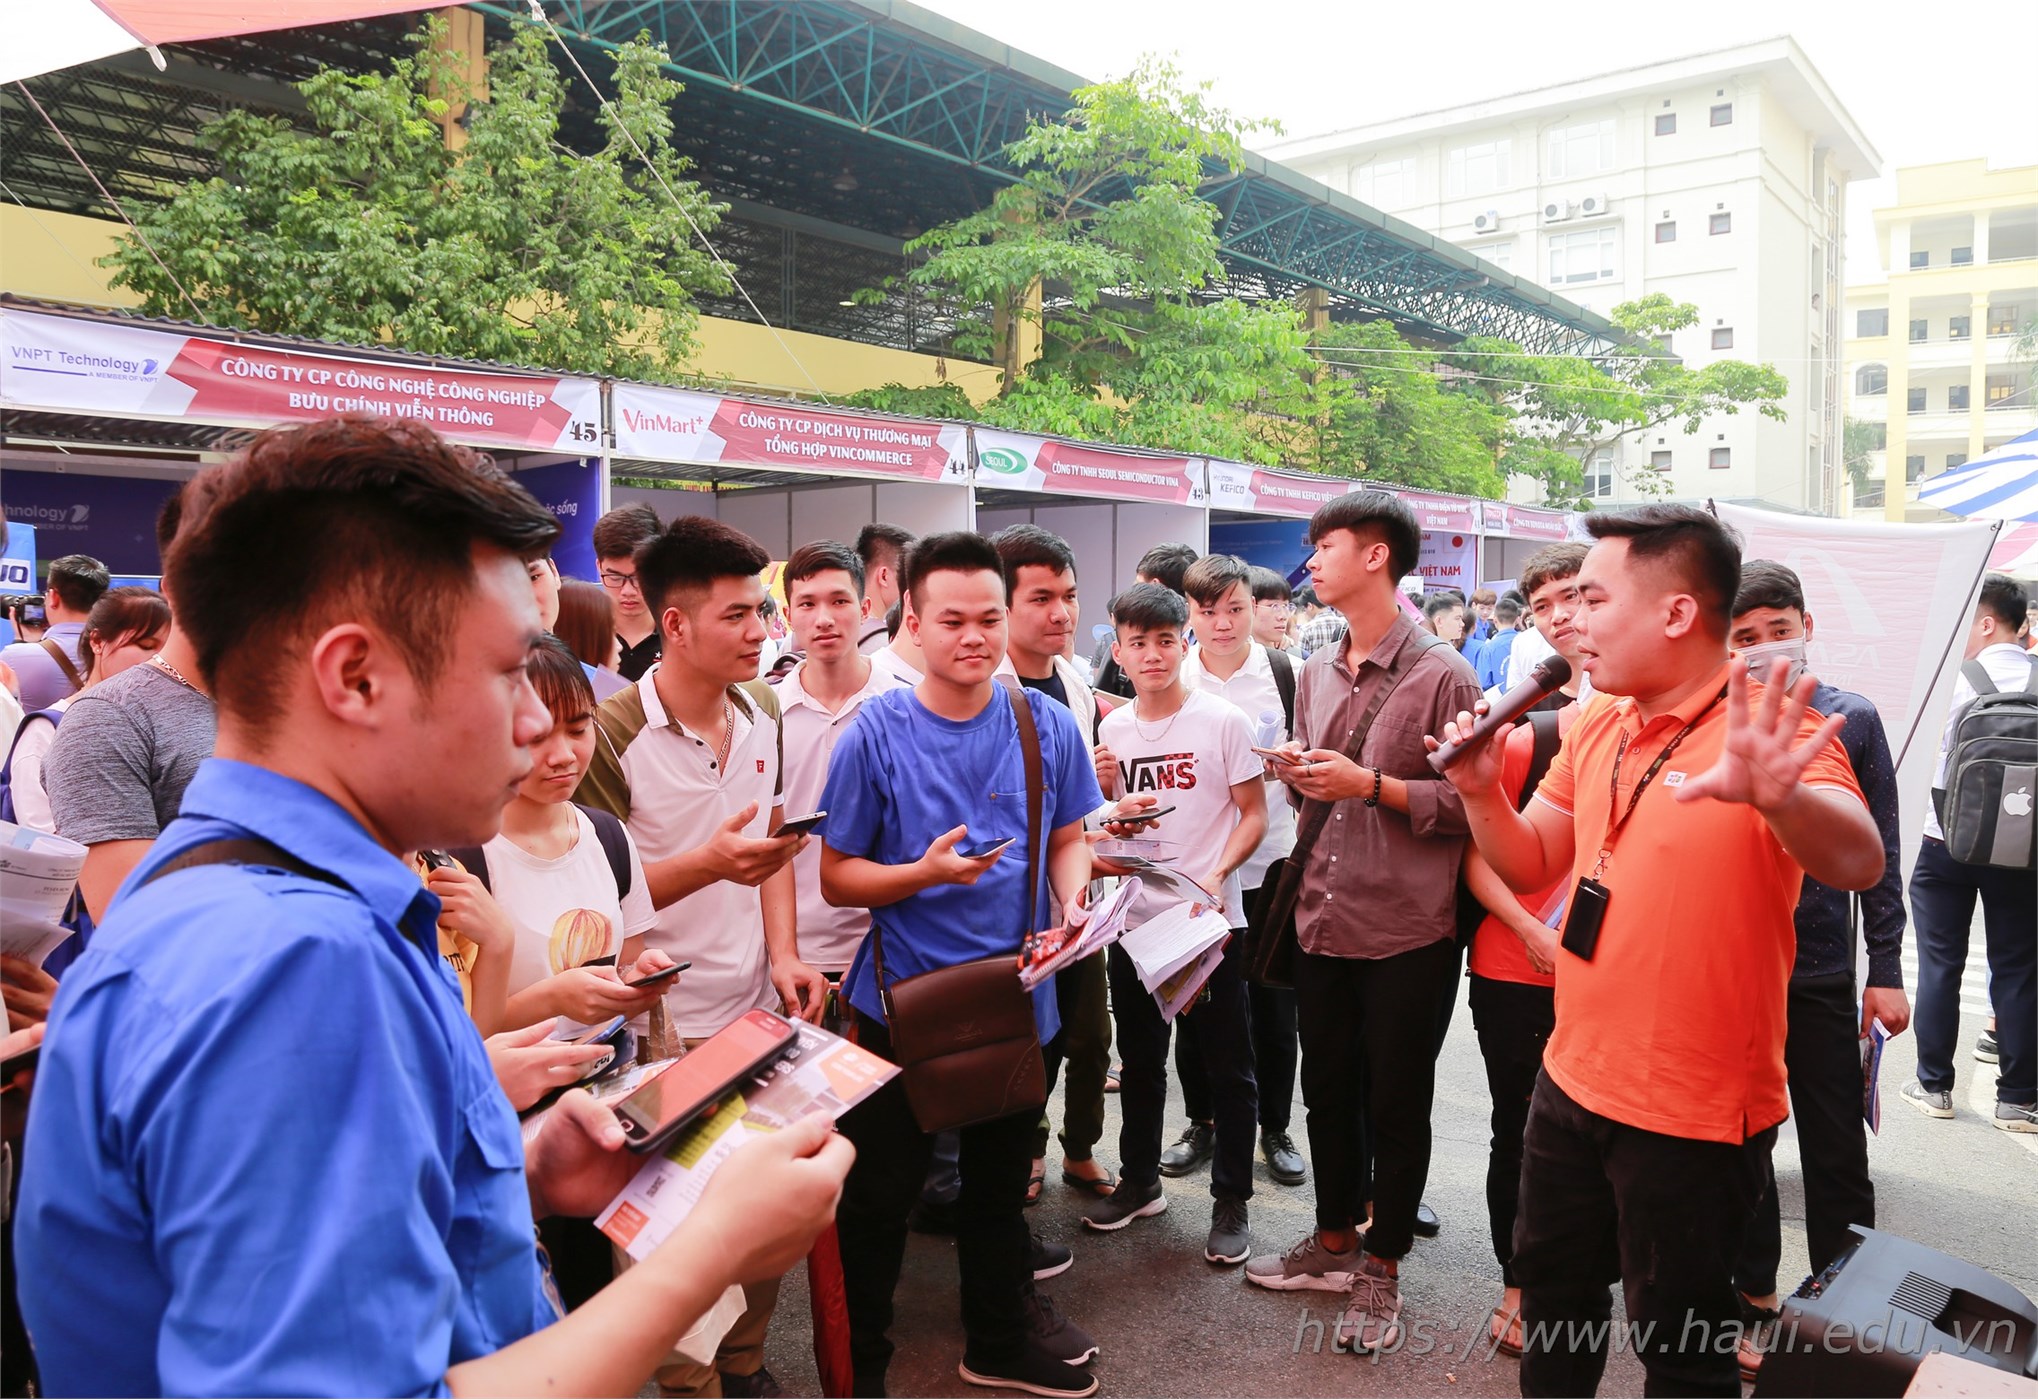 Đại học Công nghiệp Hà Nội tổ chức Ngày hội việc làm với gần 10.000 cơ hội việc làm cho sinh viên